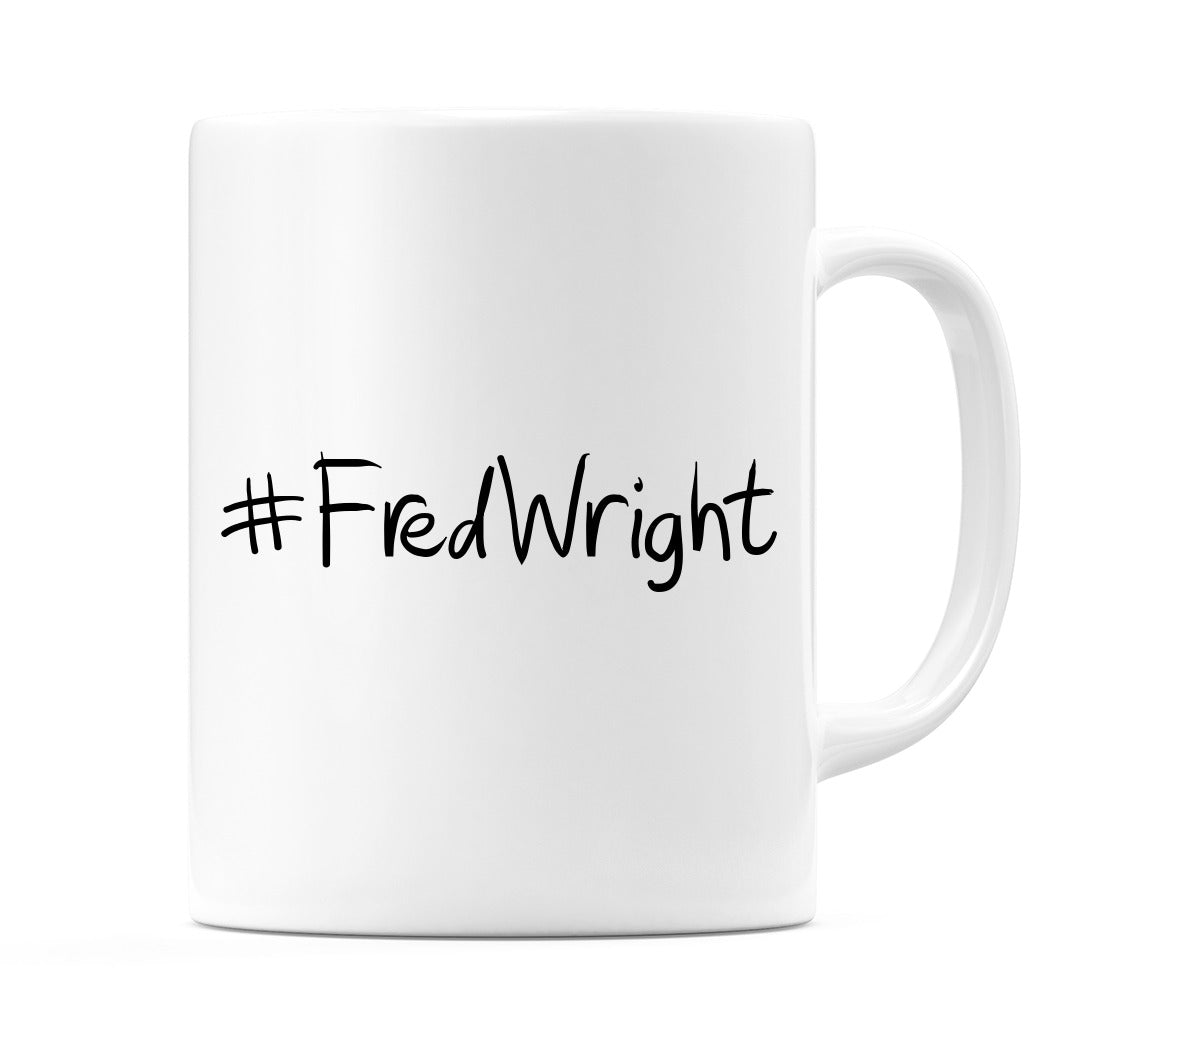 #FredWright Mug